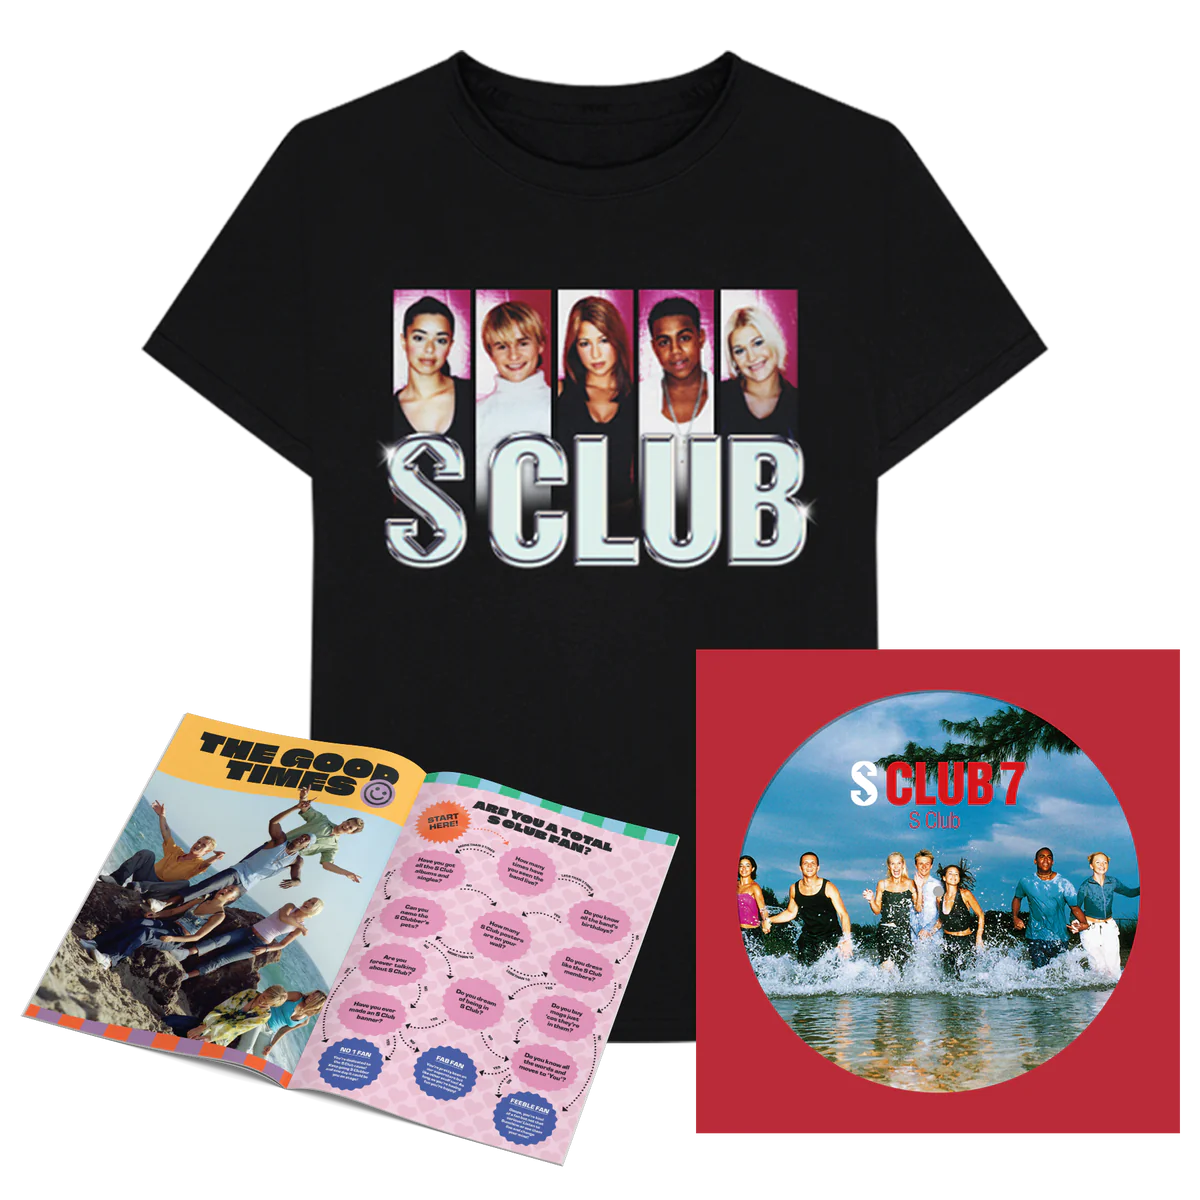 S Club: Picture Disc Vinyl LP, Tour T-Shirt & Programme